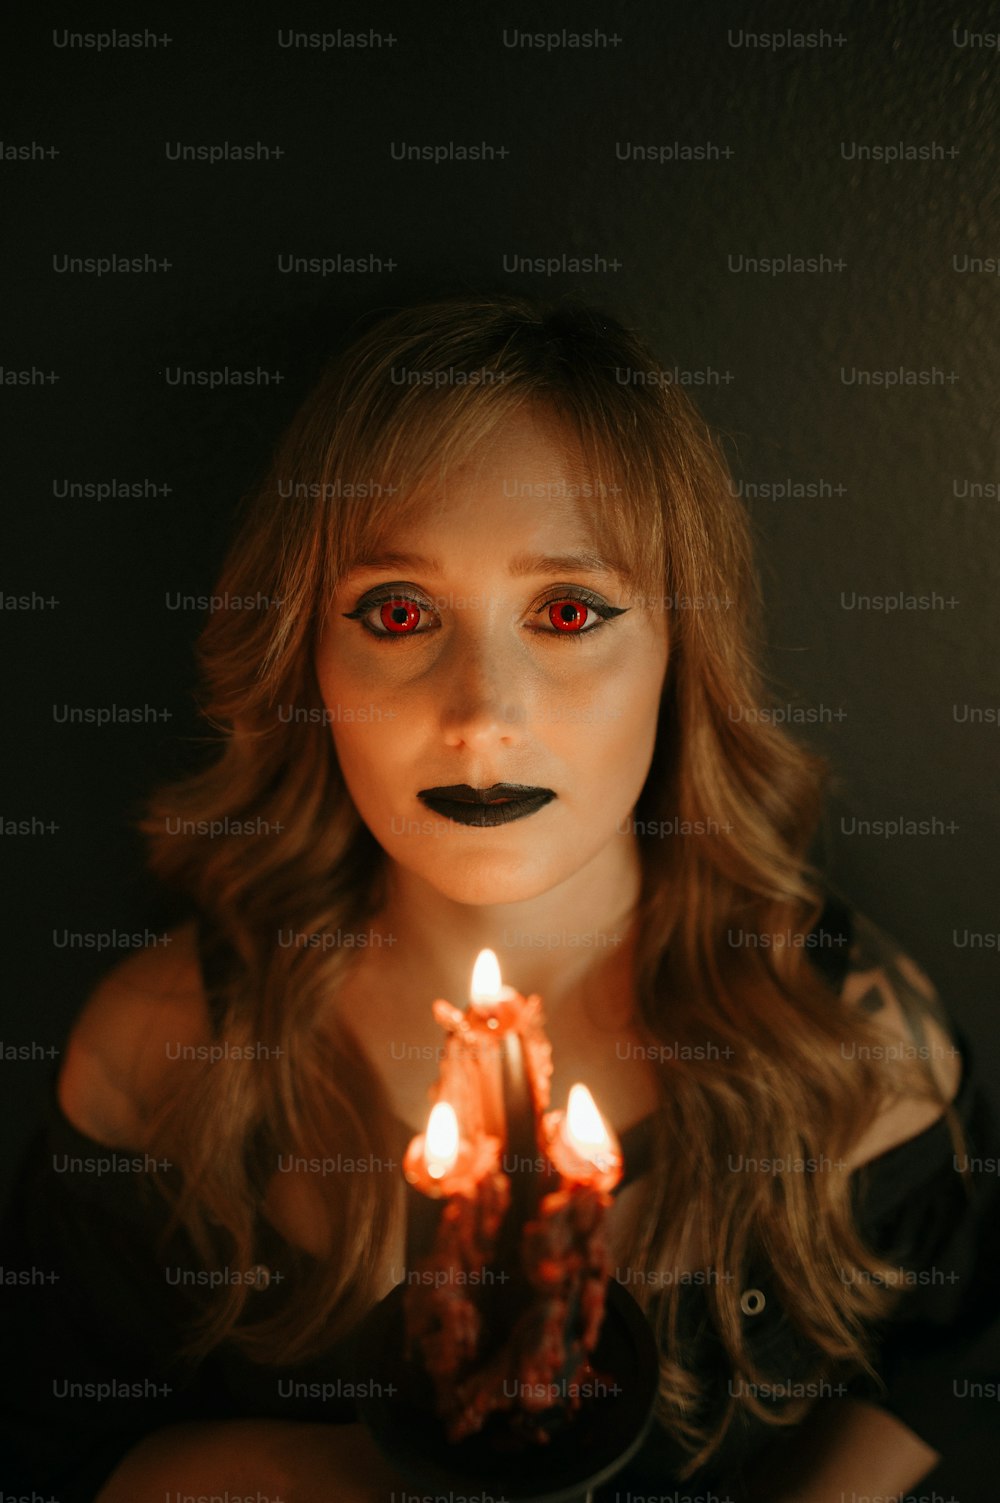 Eine Frau mit roten Augen, die eine brennende Kerze hält